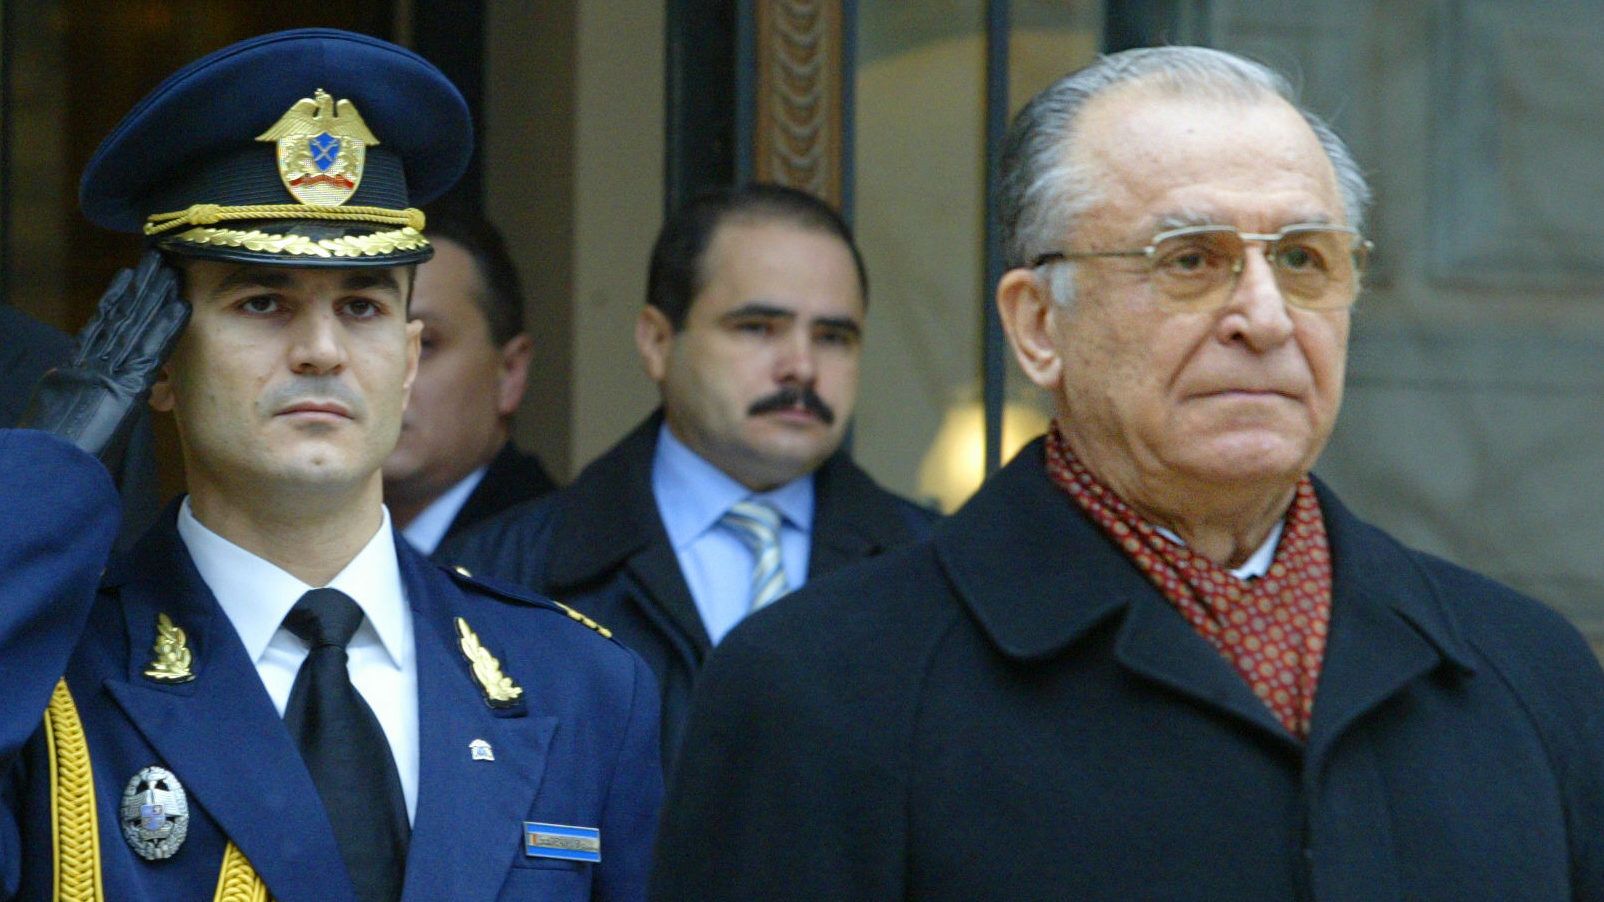 Bíróság elé áll Ion Iliescu volt román államfő az 1989-es forradalom miatt